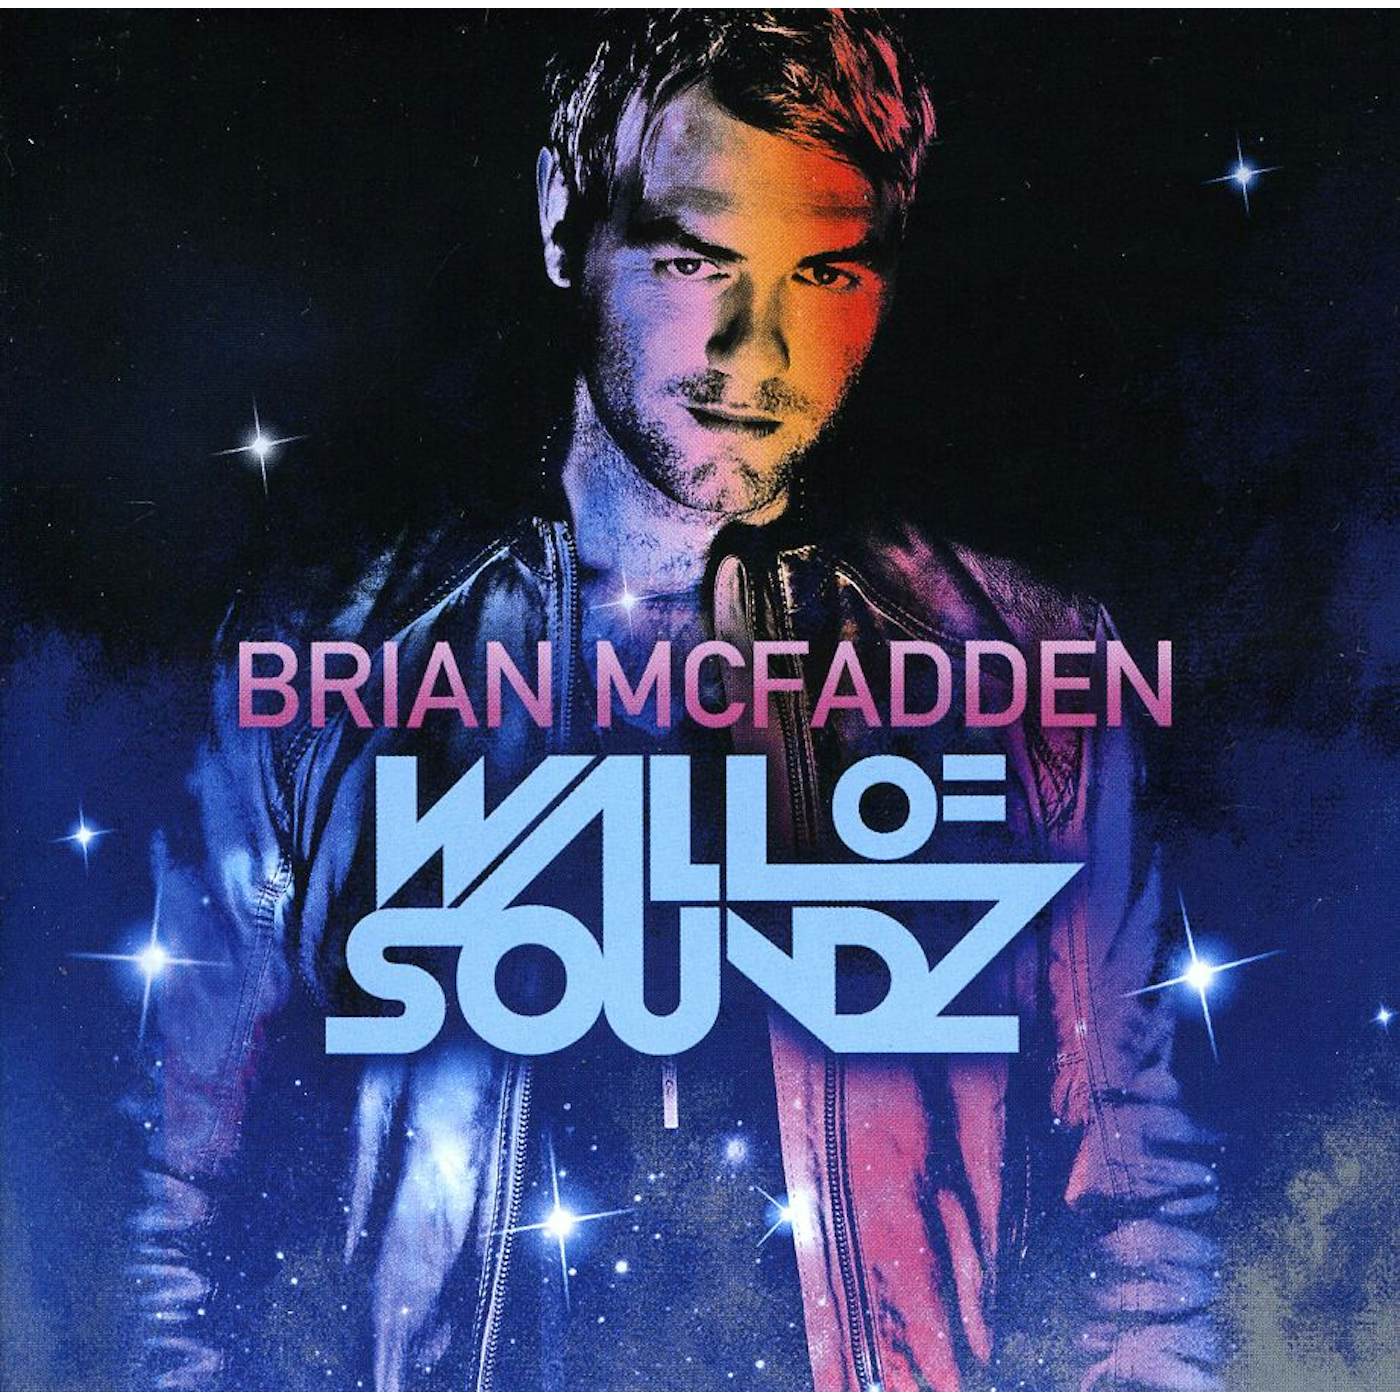 Brian McFadden WALL OF SOUNDZ CD